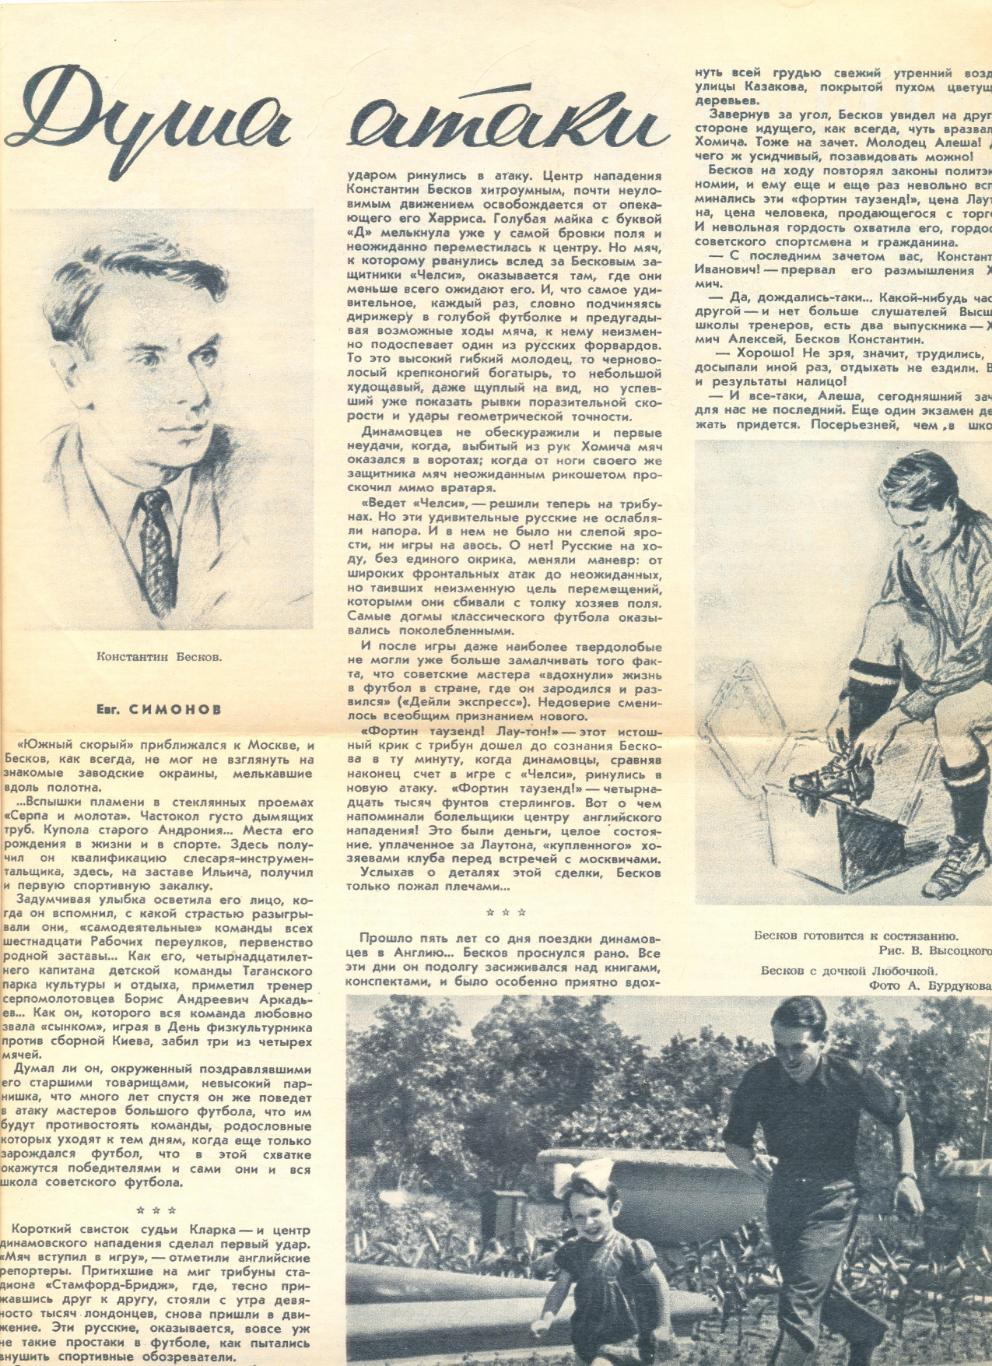 Статья Душа атаки о Константине Бескове. Журнал Огонек 1951 г.